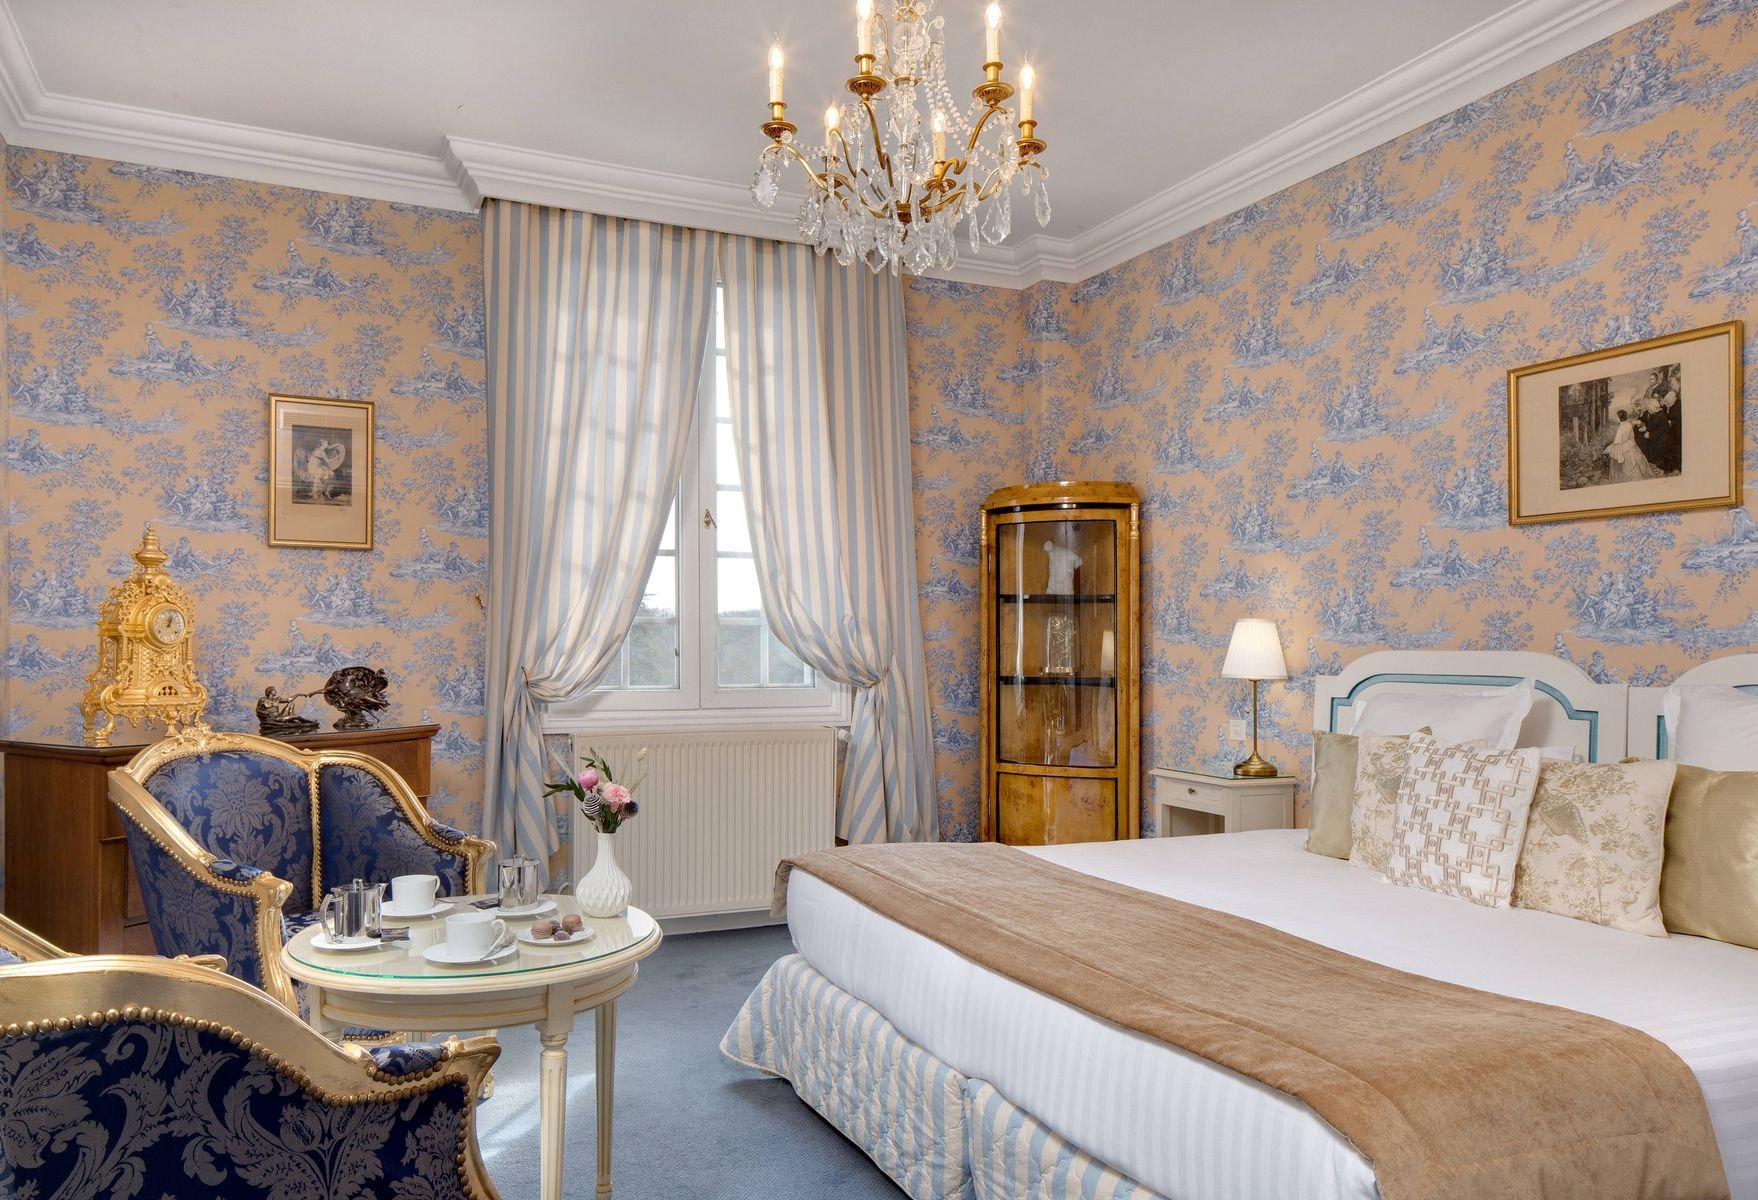 La Maison Younan | Luxury castels 5-star hotels in France